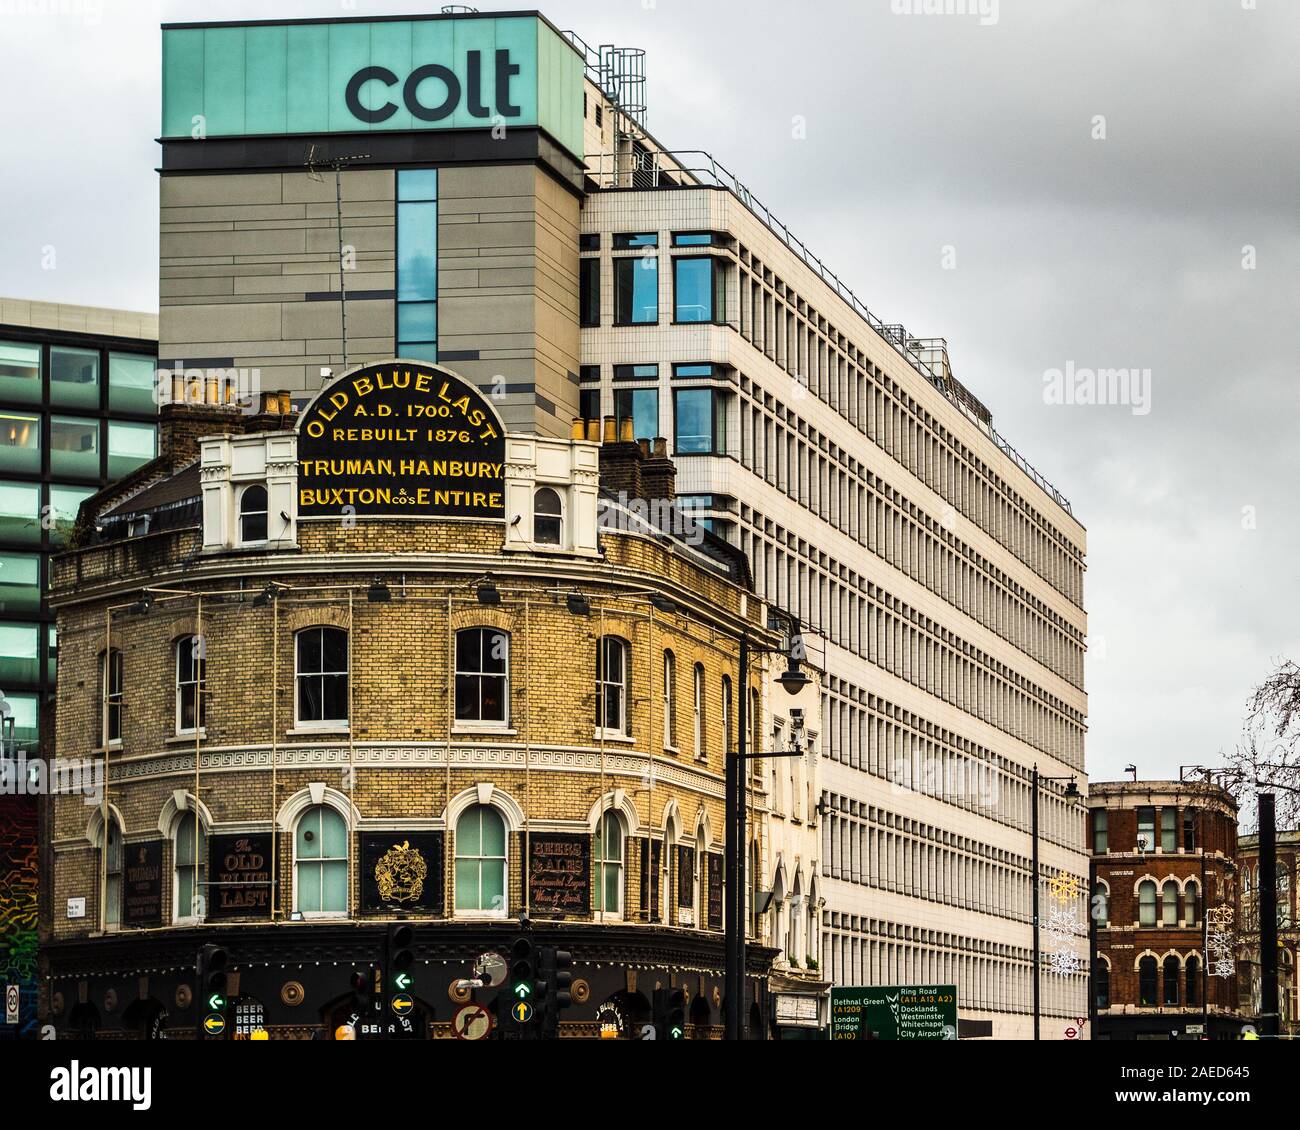 Colt Technology Services Group Limited Siège social Great Eastern Street Londres. Colt est une entreprise de télécommunications multinationales avec l'AC à Londres. Banque D'Images